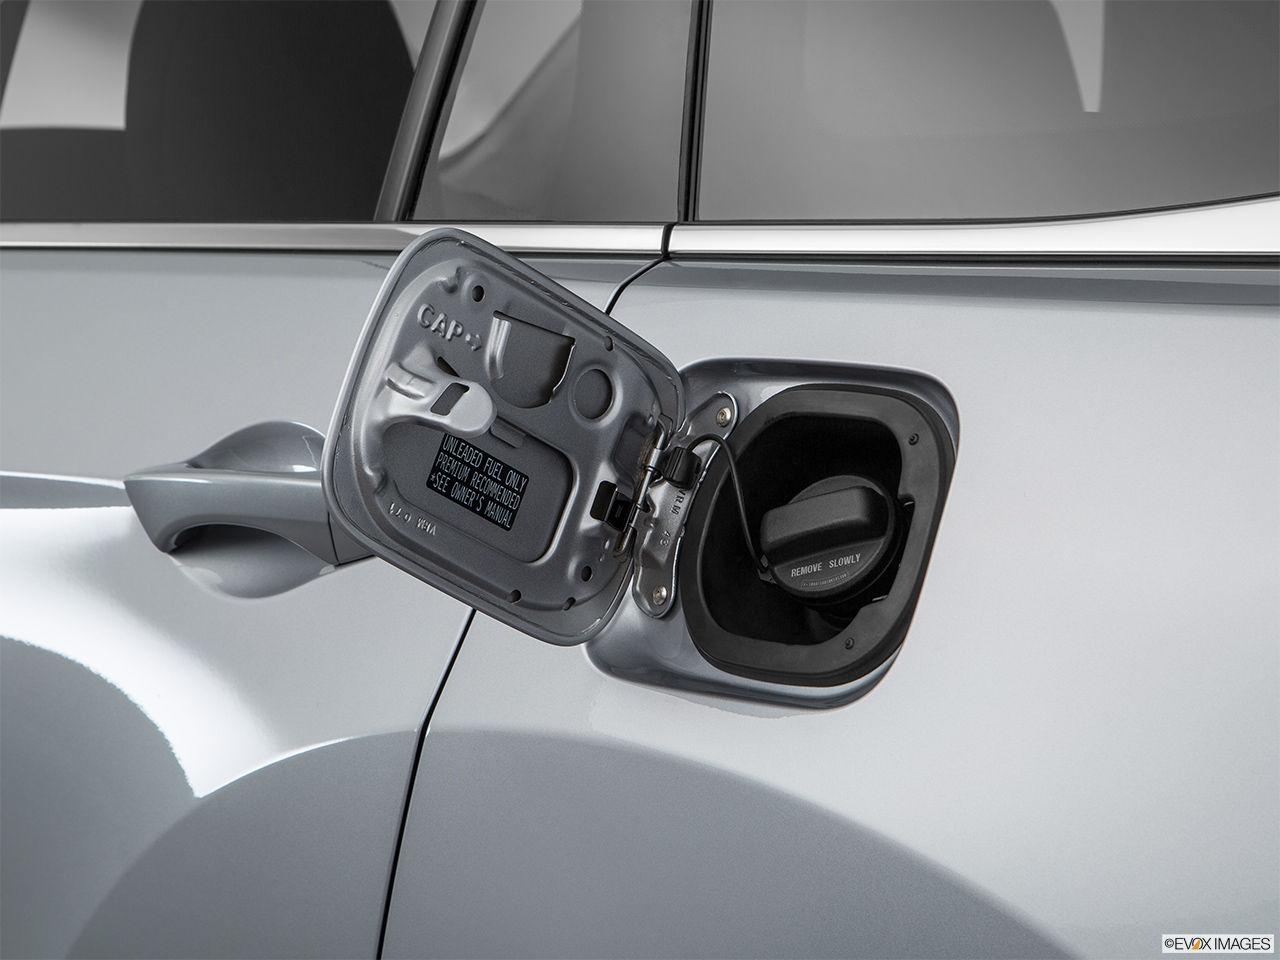 2017 Acura RDX AWD Gas cap open. 